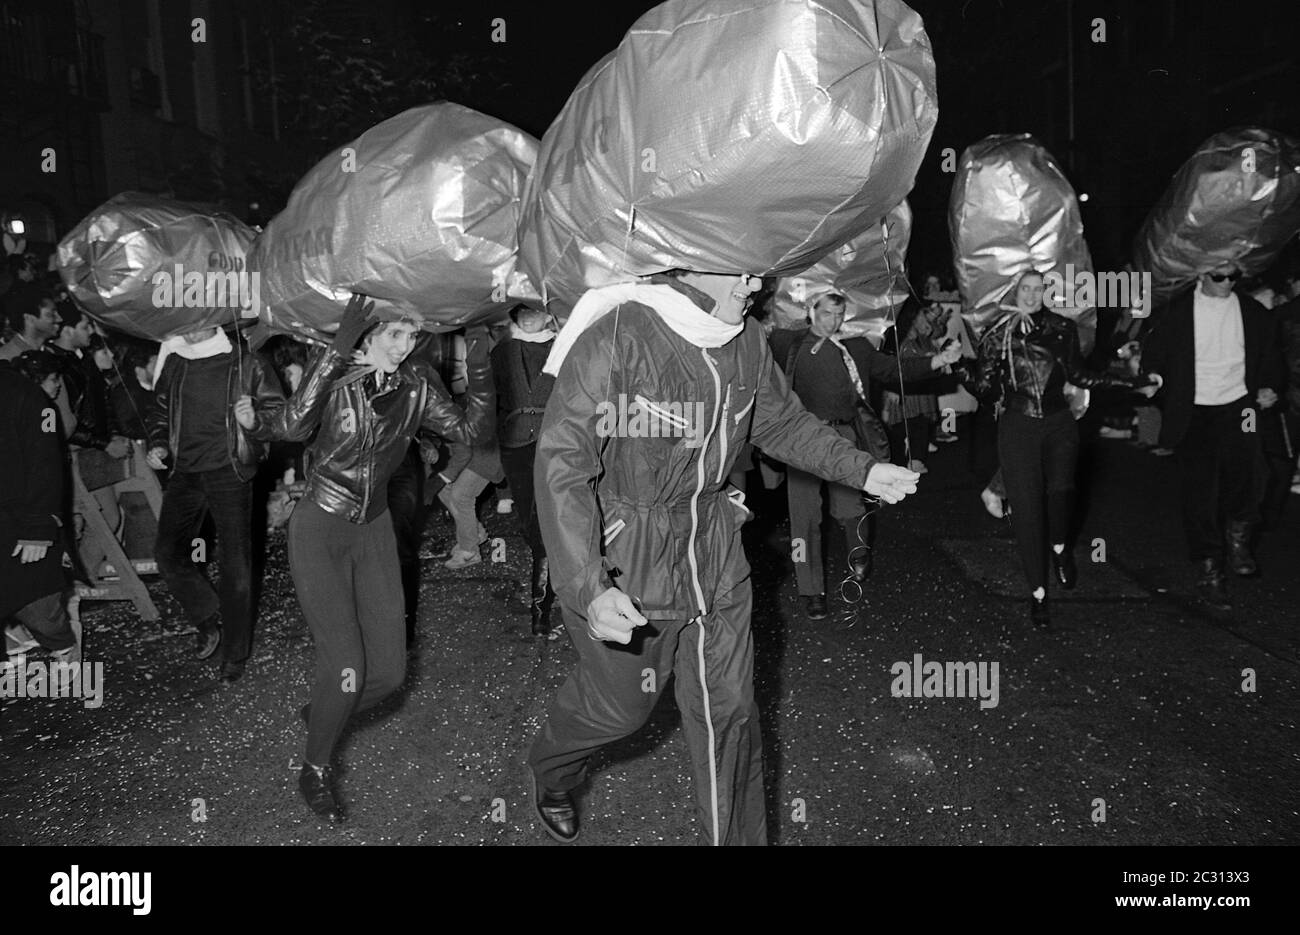 Goodyear Blimps al Greenwich Village Halloween Parade, New York City, USA negli anni '80 fotografato con film in bianco e nero di notte. Foto Stock